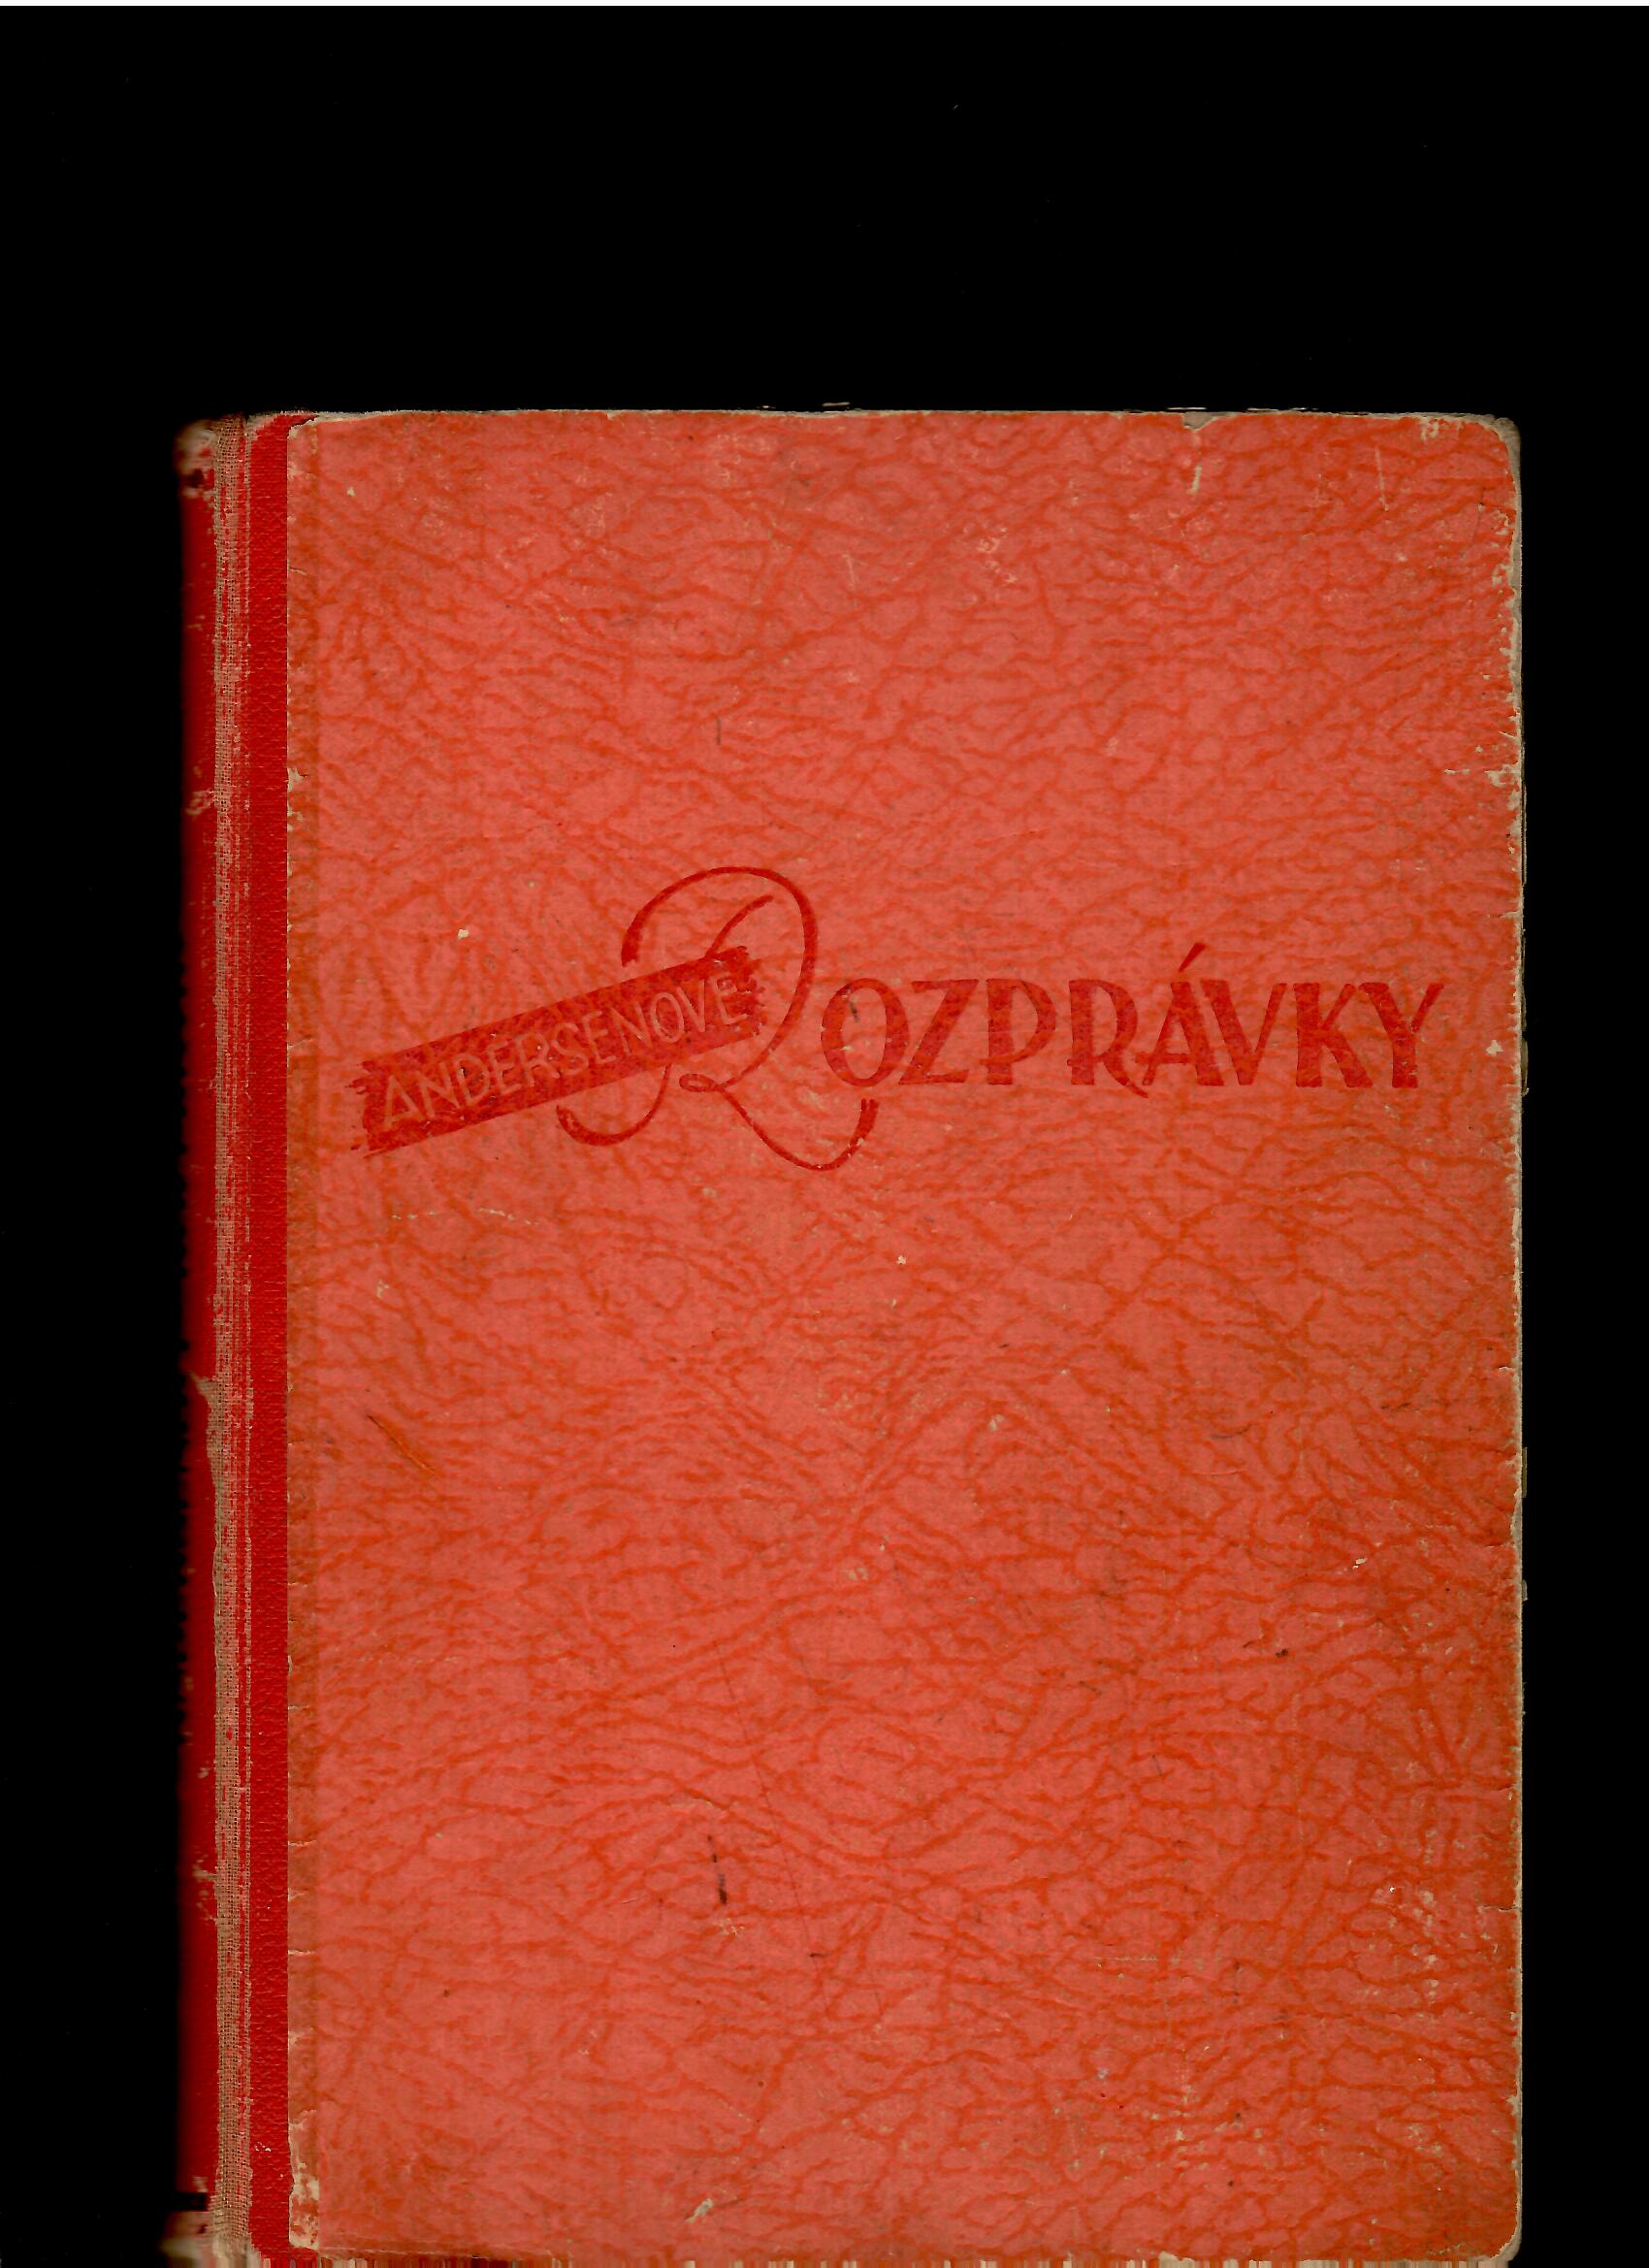 Štefan Koperdan (ed.): Andersenove rozprávky /1945, il. Vincent Hložník/